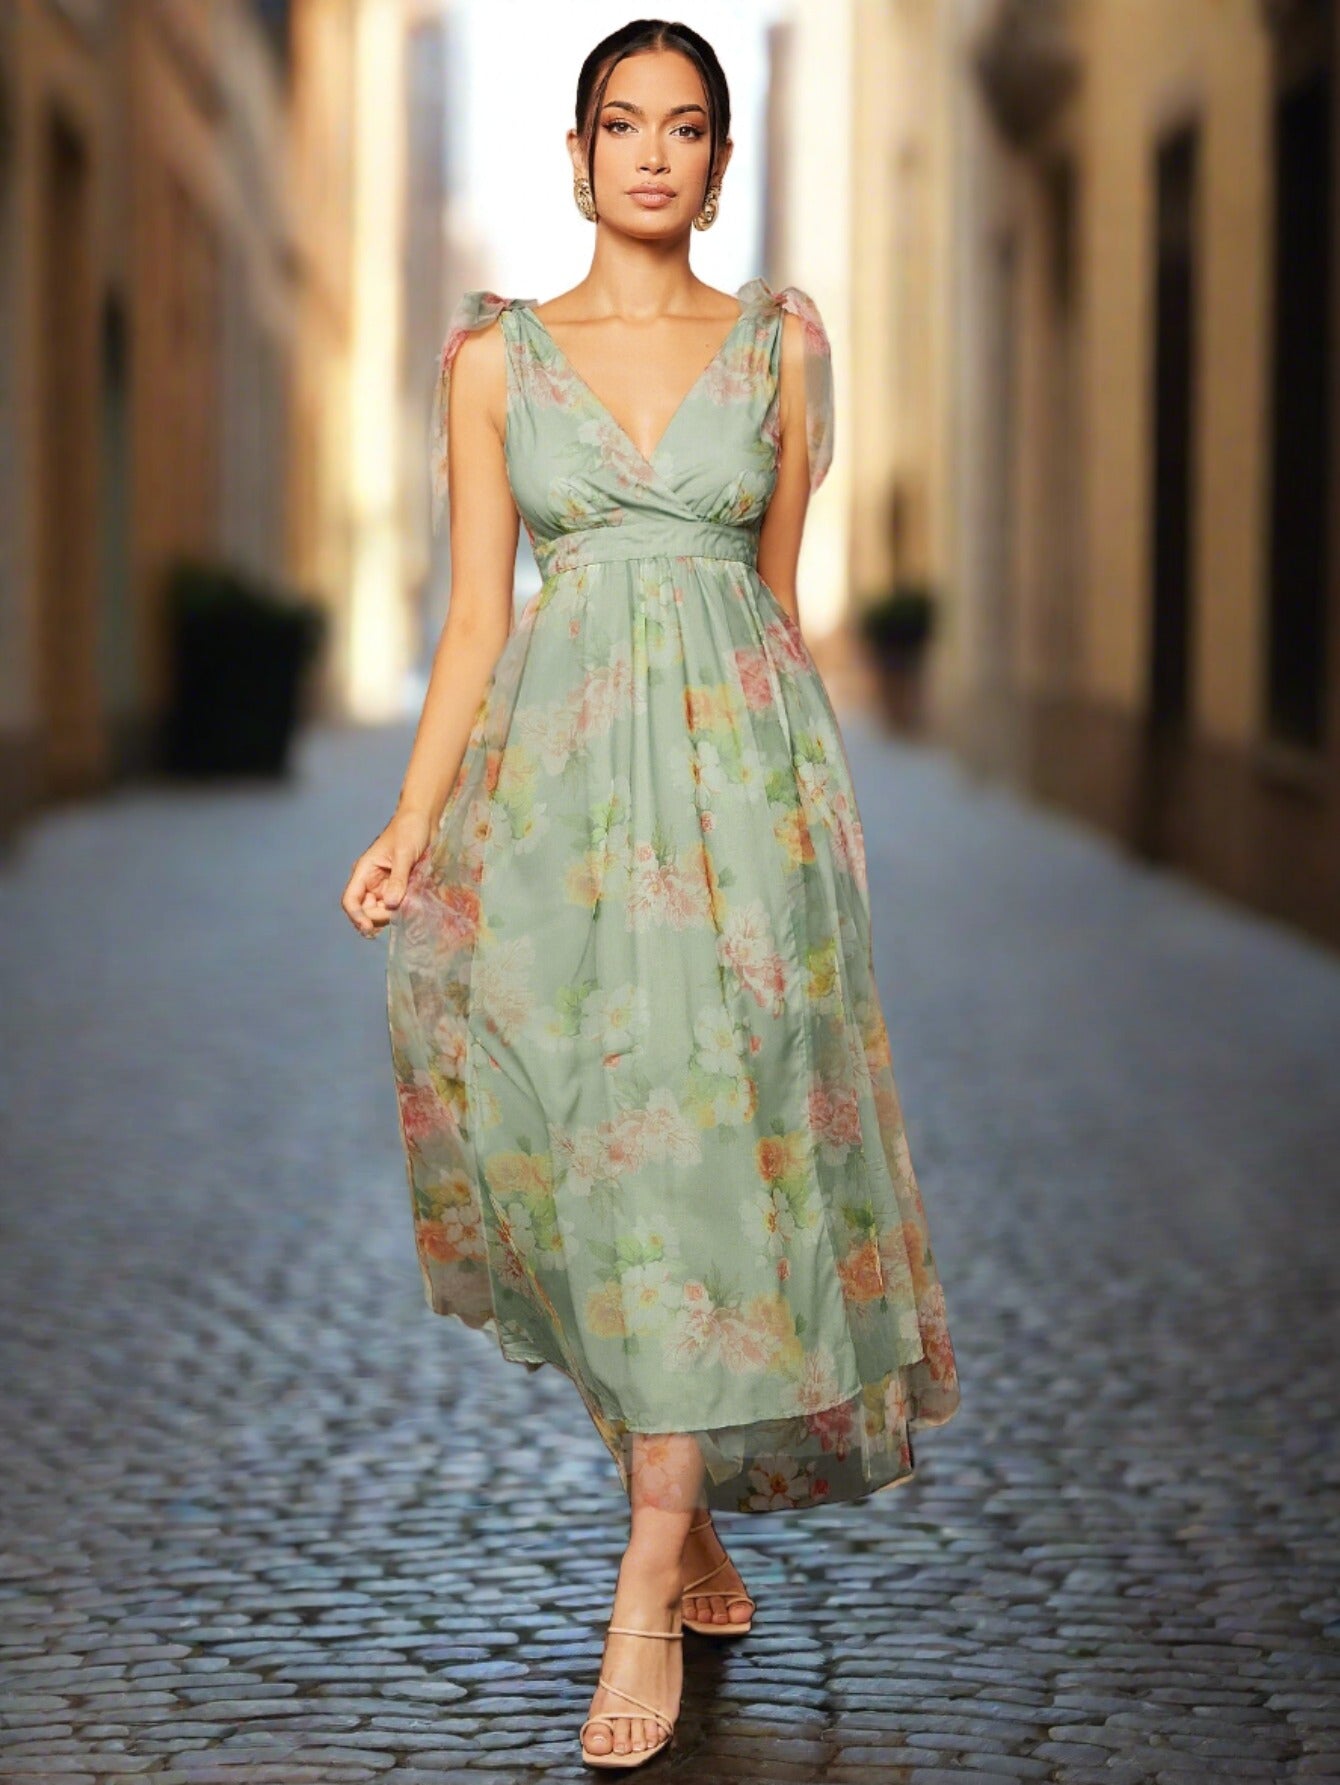 Fanna Mint Green A-Line Floral Dress